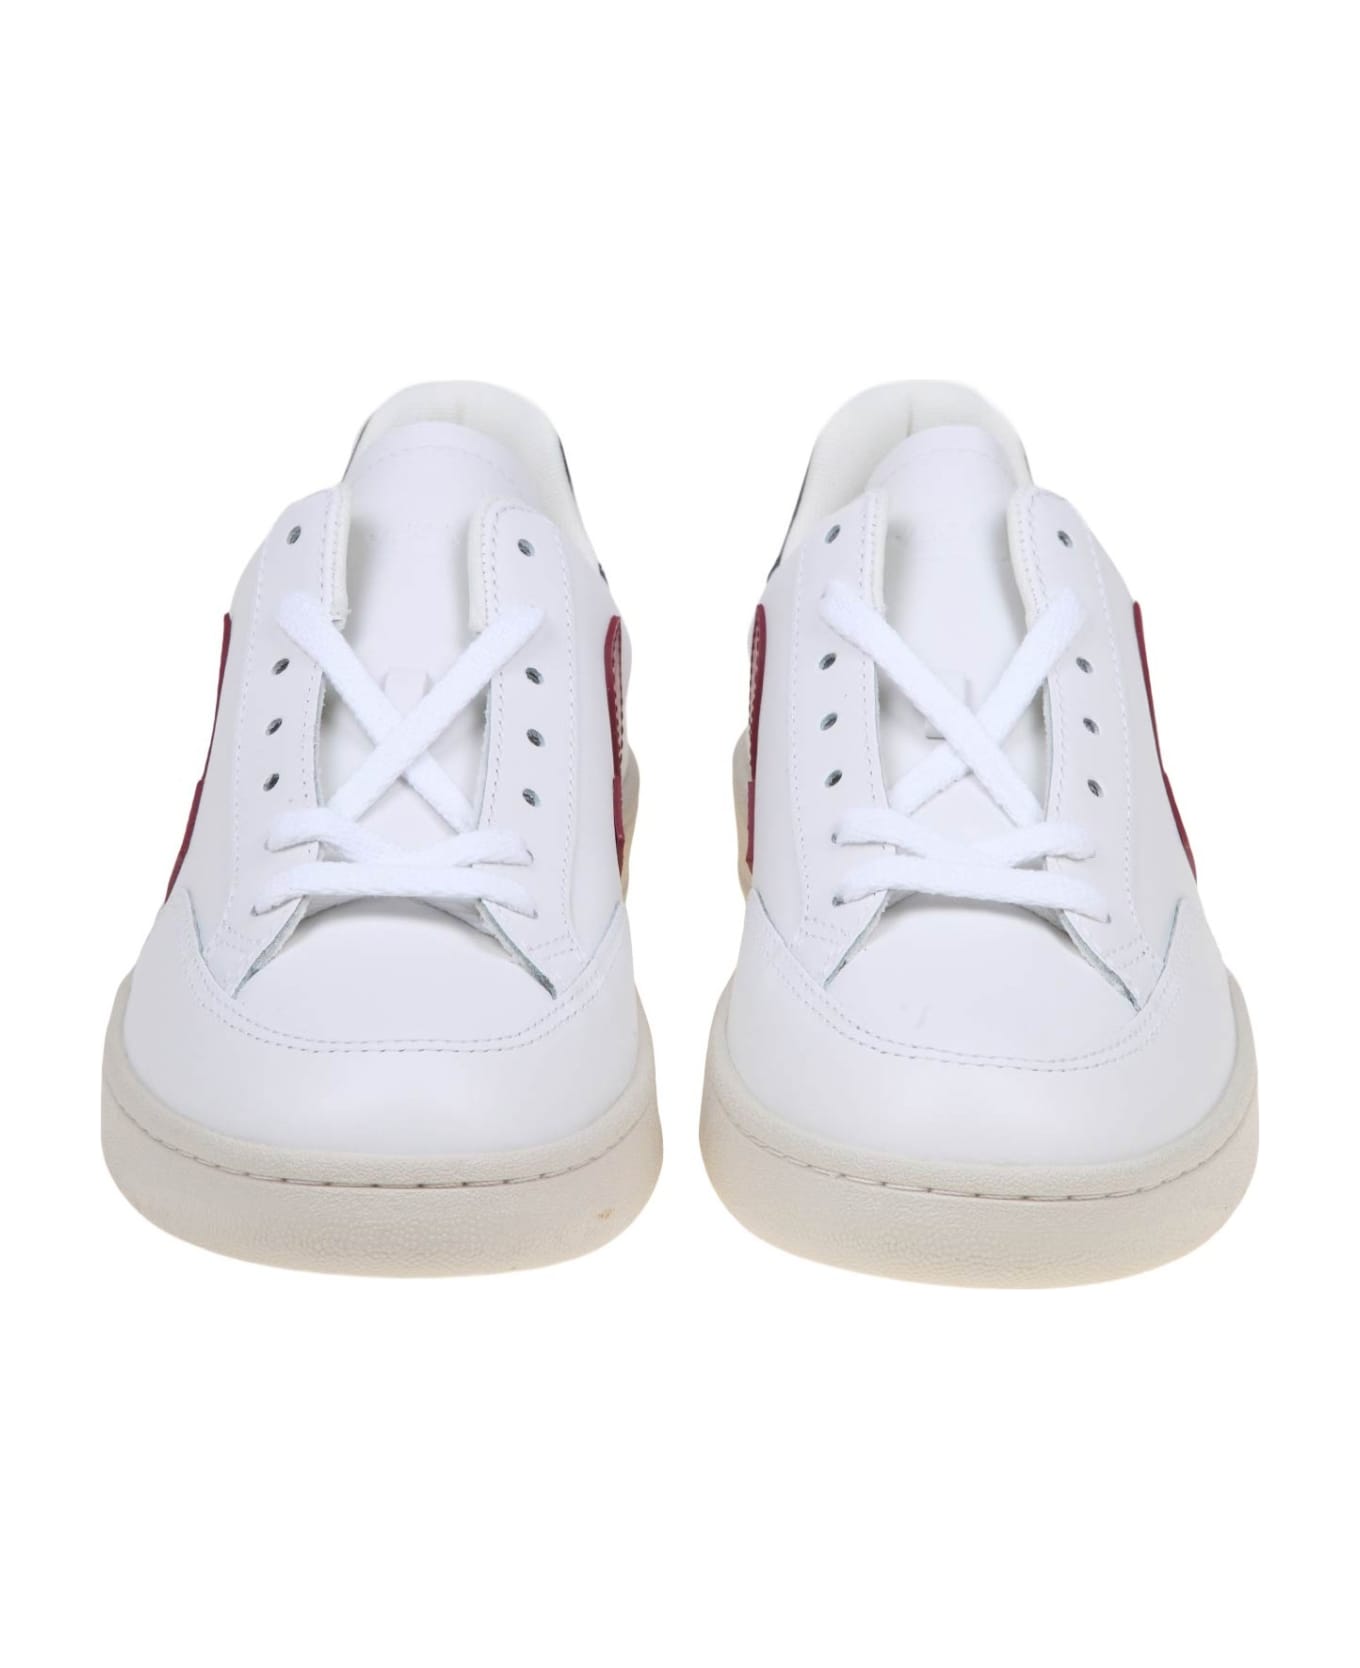 Veja V 12 Sneakers In White/marsala Leather